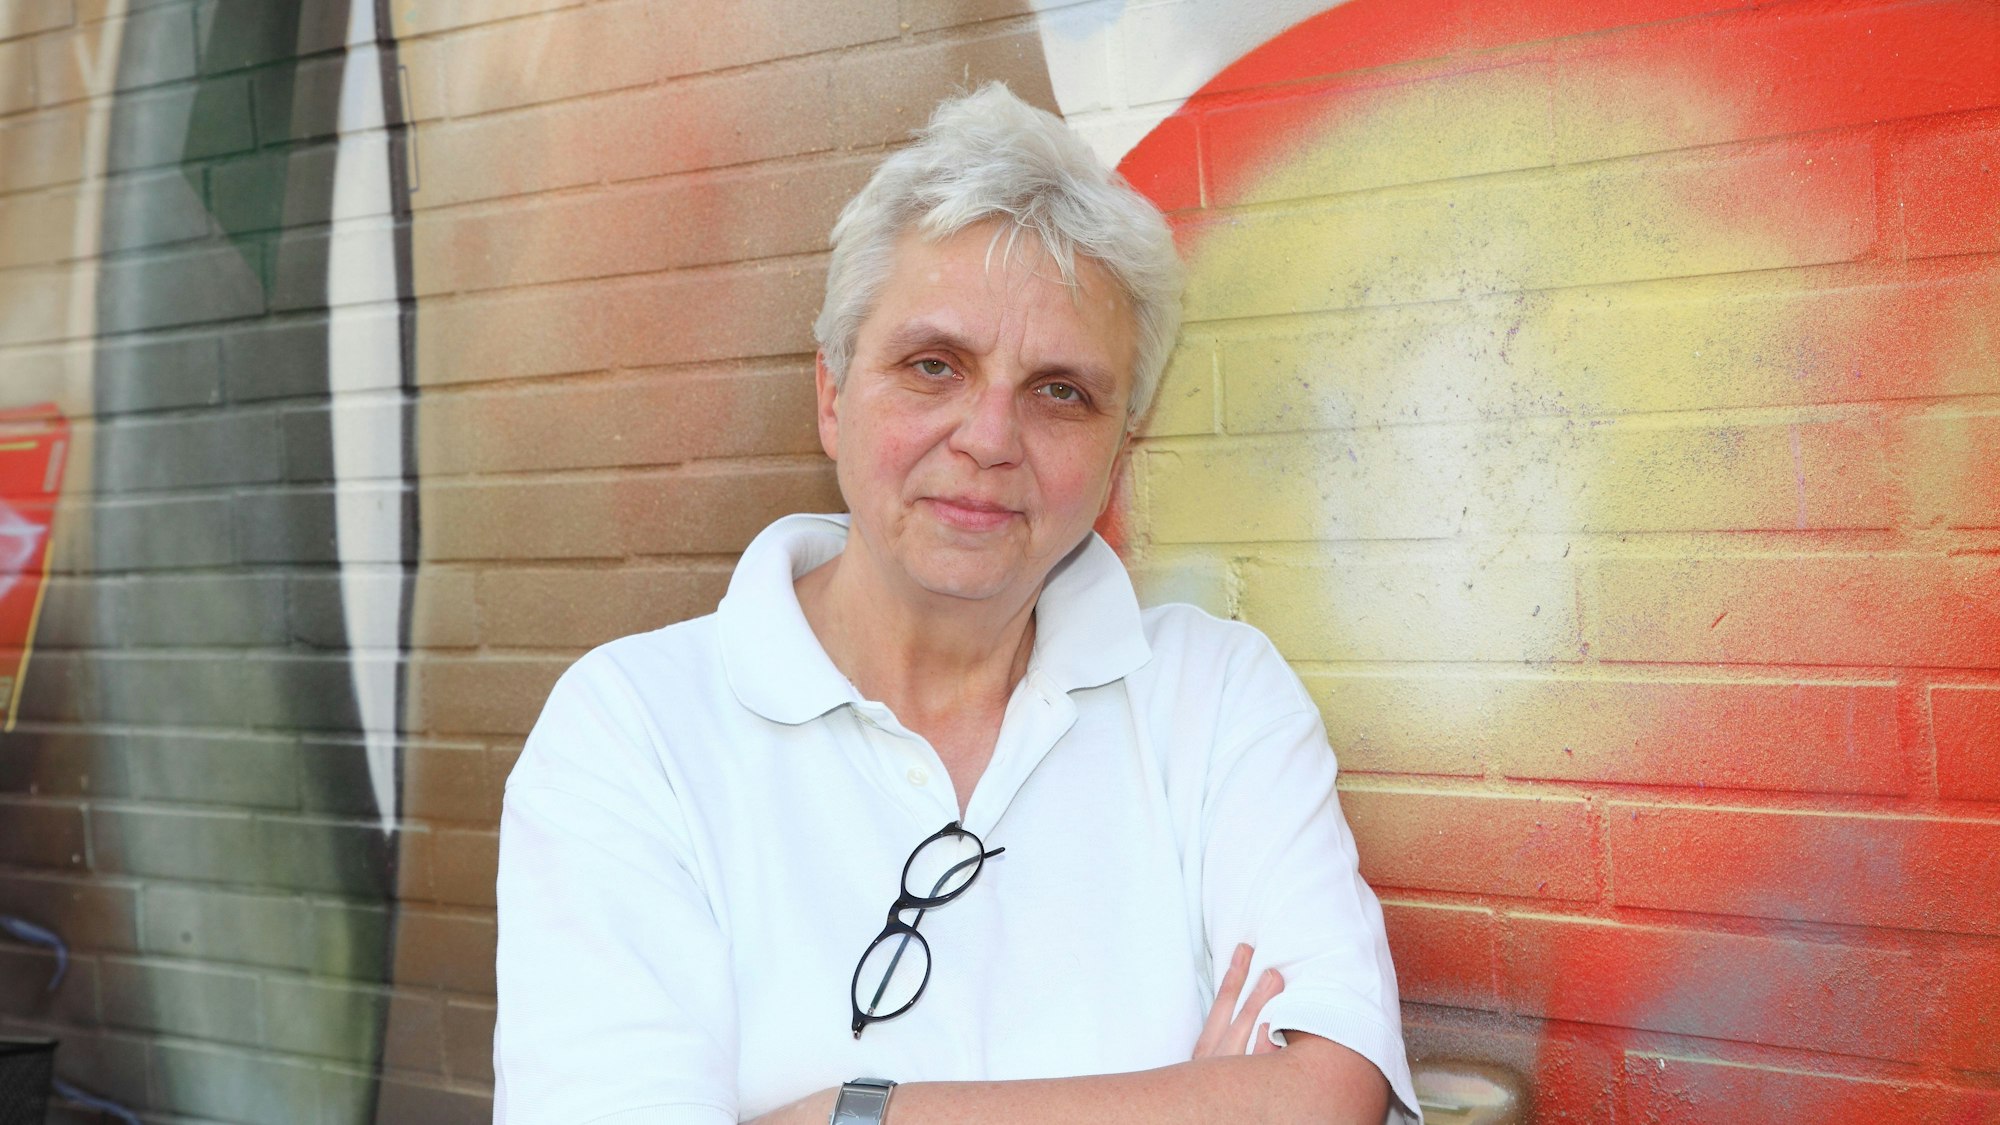 Brigitte Maser lehnt mit weißem Poloshirt an einer farblich dekorierten Hauswand.